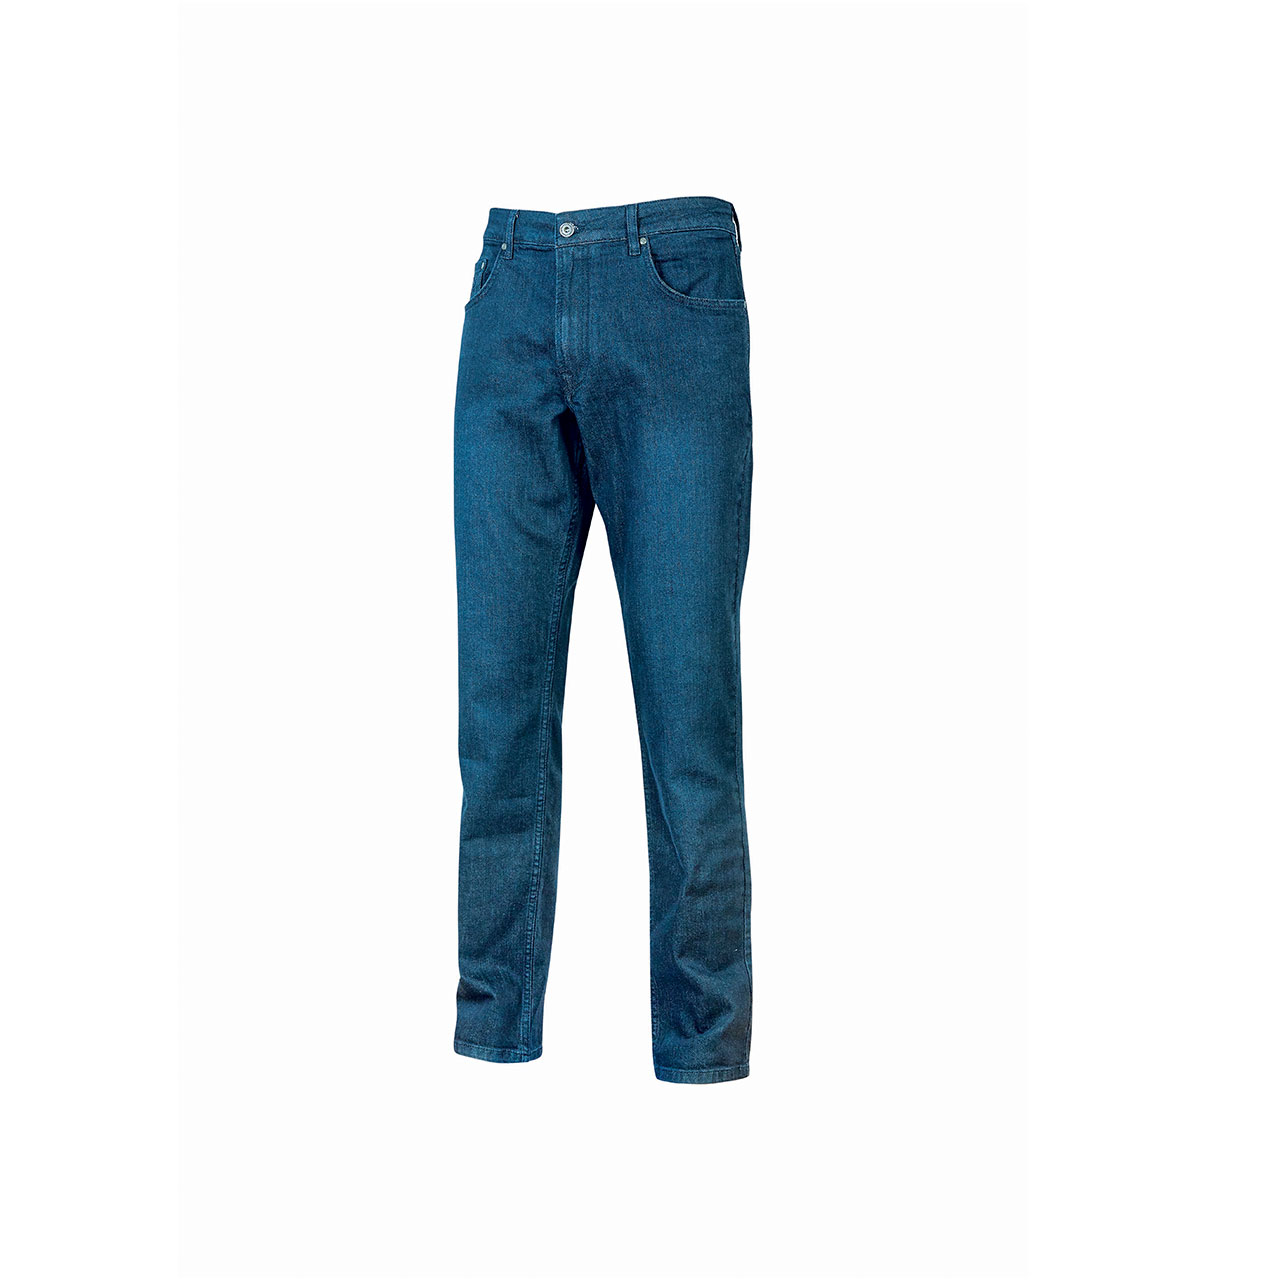 pantalone-da-lavoro-upower-modello-romeo-colore-guado-jeans.png